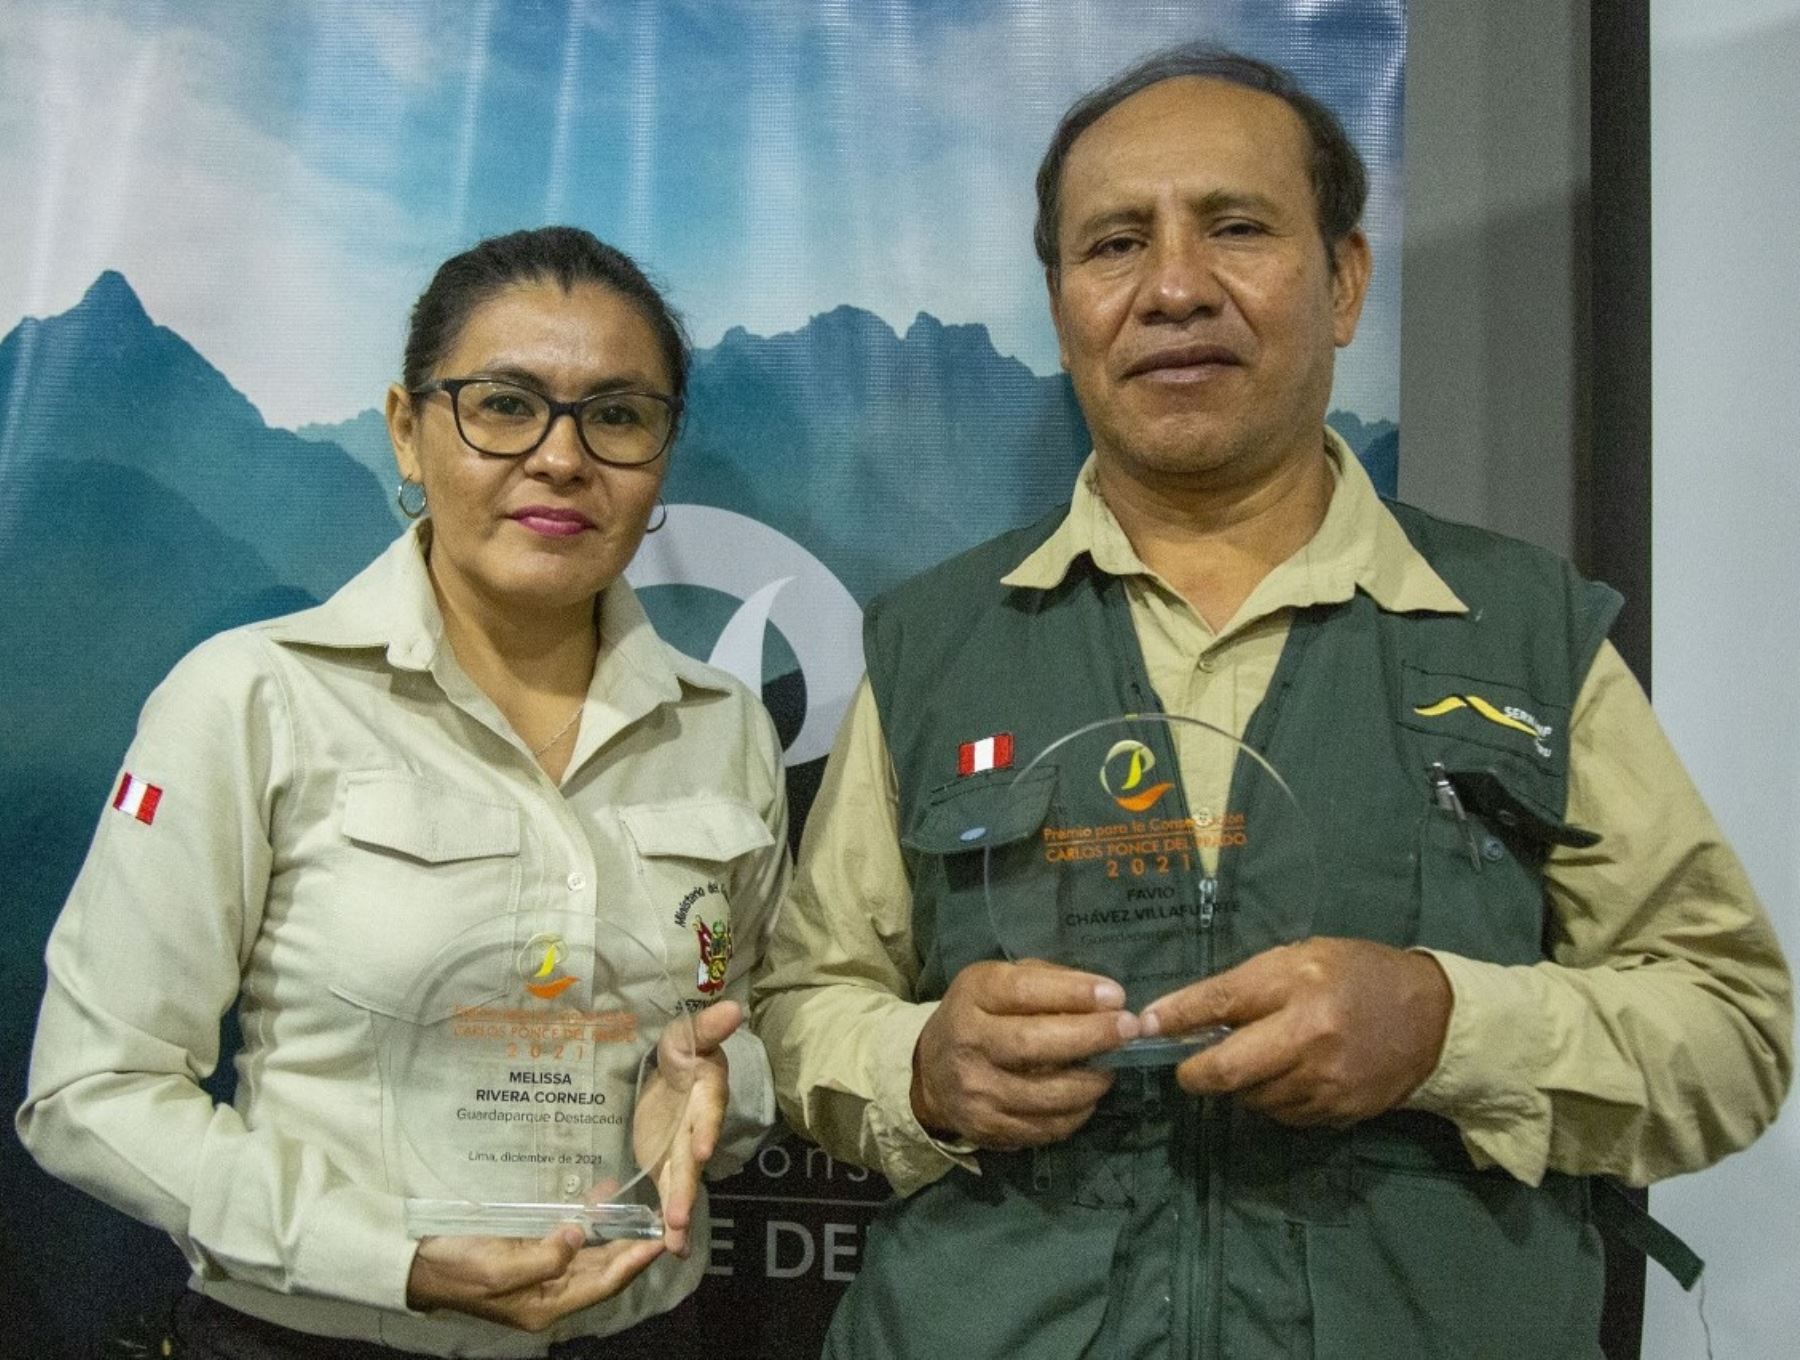 Guardaparques del Santuario Machu Picchu, Favio Chávez; y de la Reserva Comunal Purús, Melissa Rivera, destacan entre los ganadores del Premio para la Conservación Carlos Ponce del Prado. ANDINA/Difusión